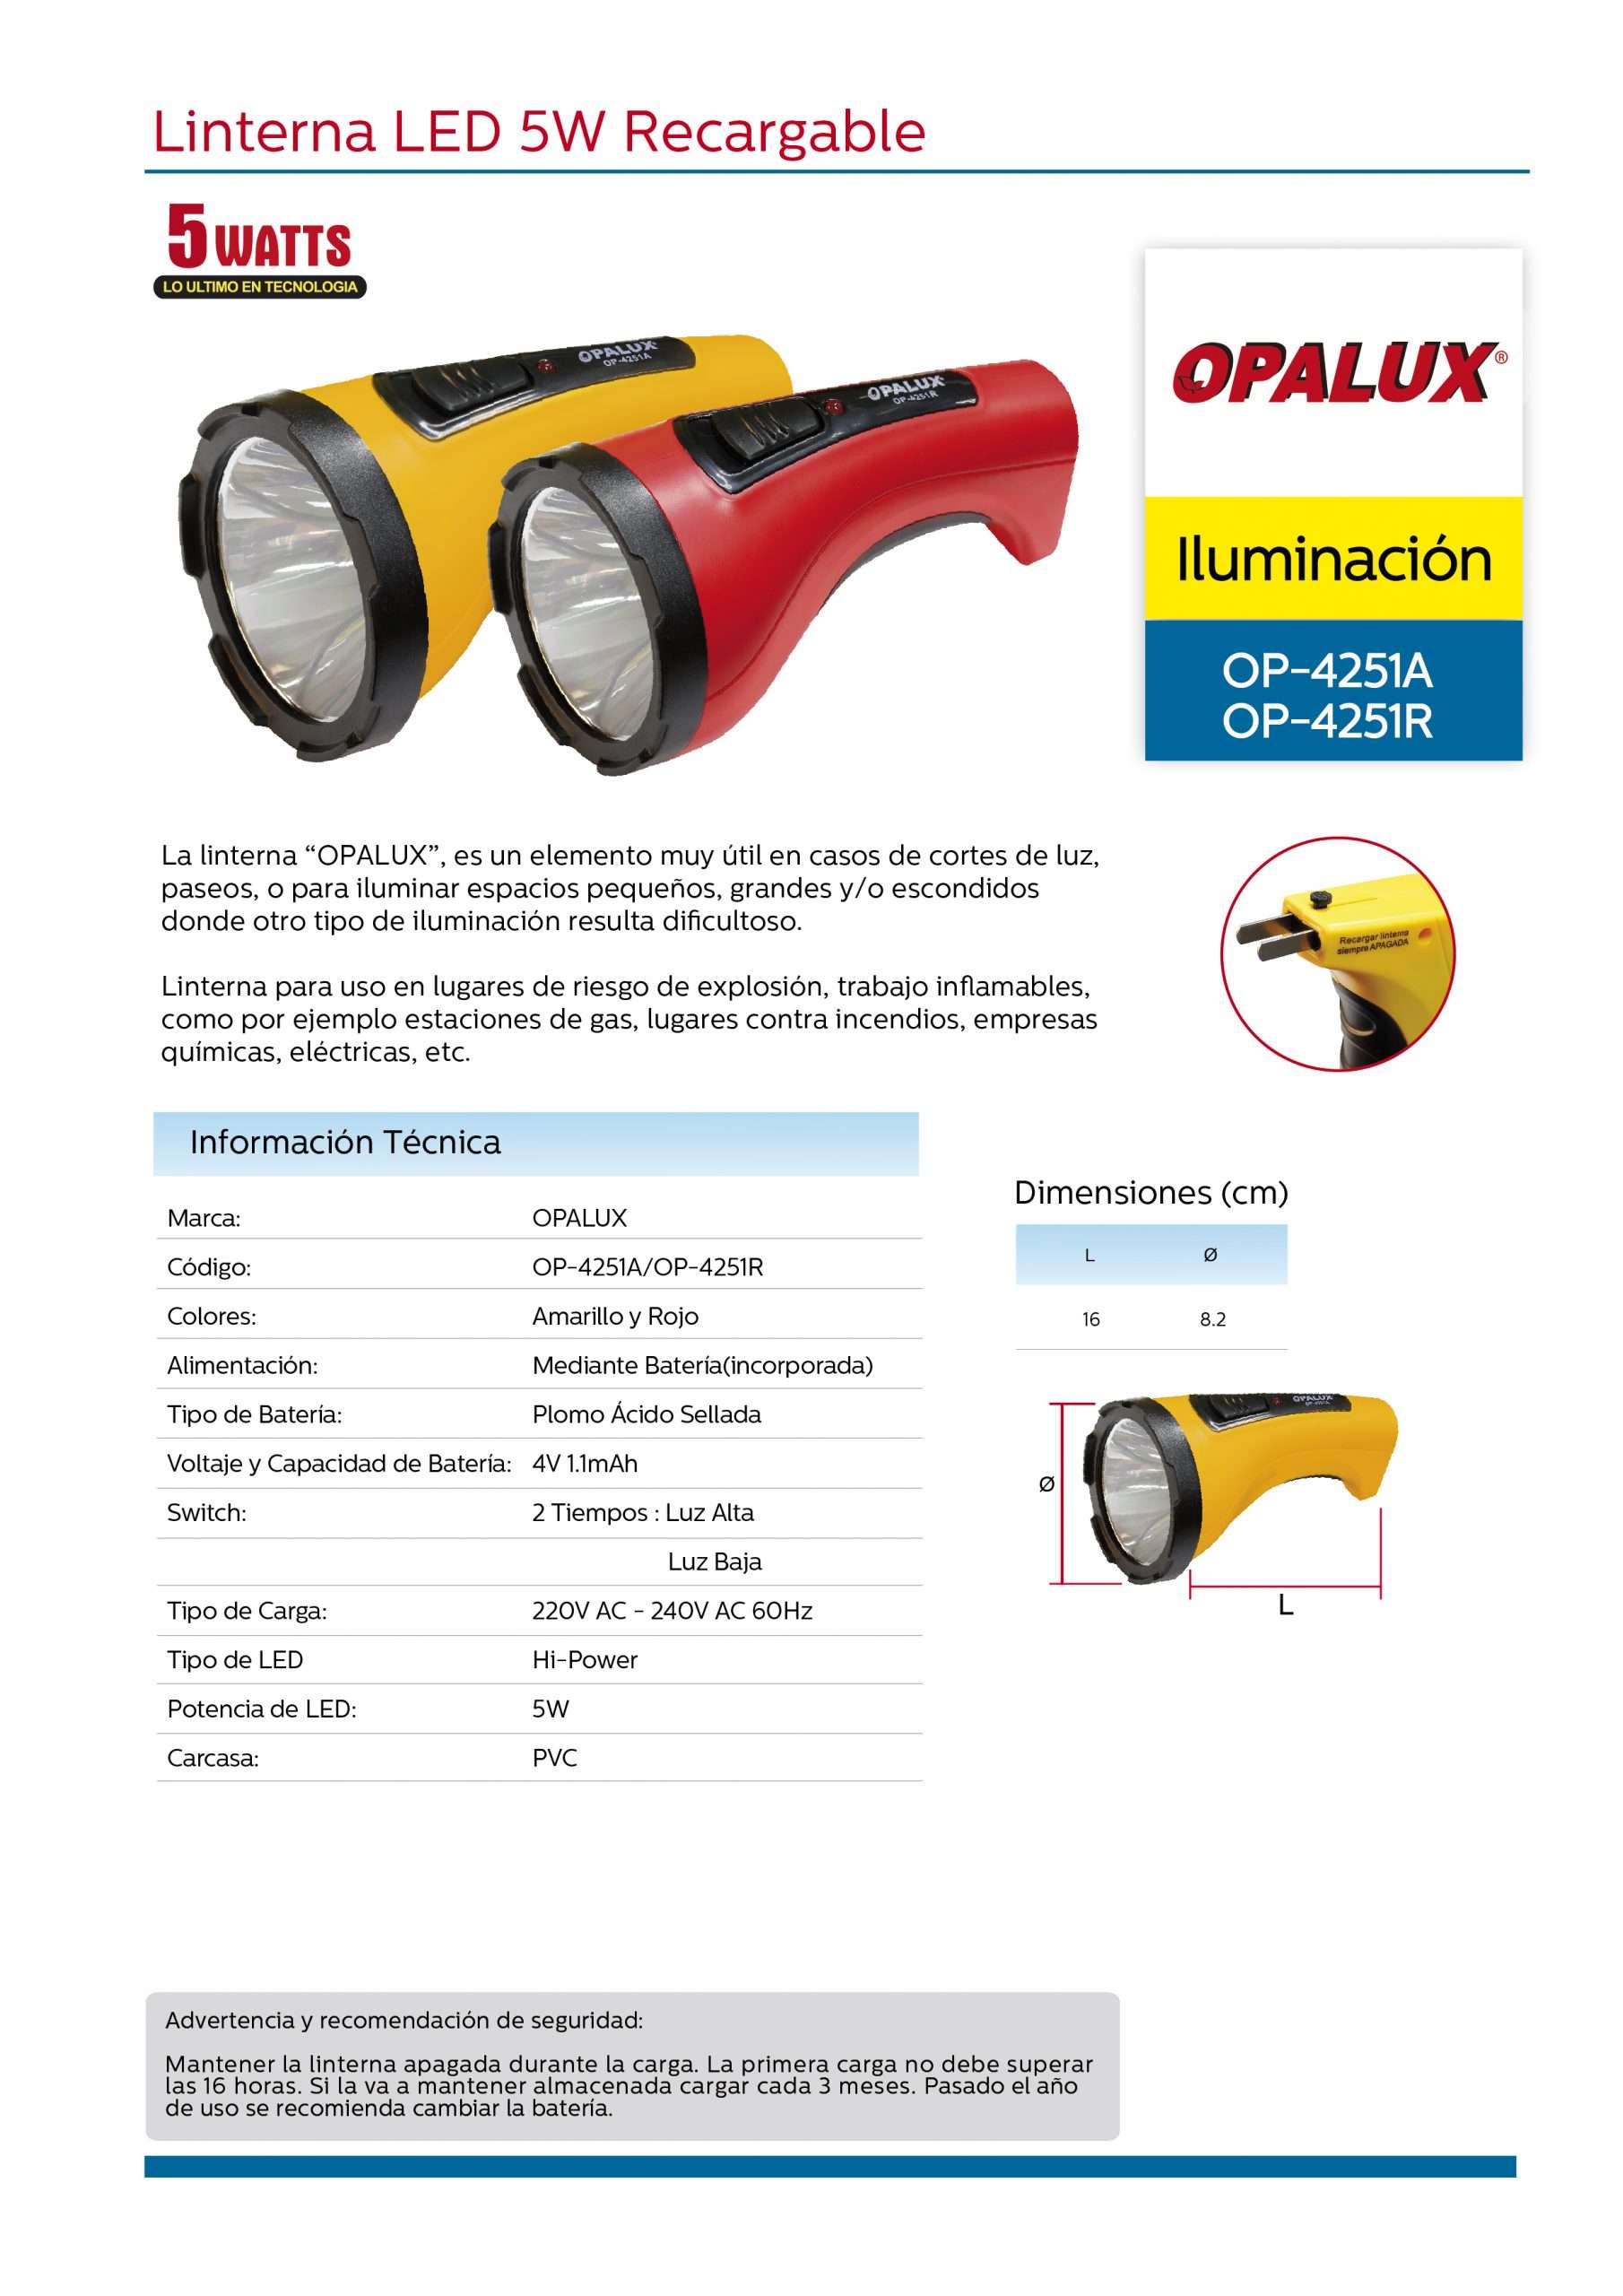 Linterna Portátil Recargable LED 10W HB-4011T/A OPALUX 